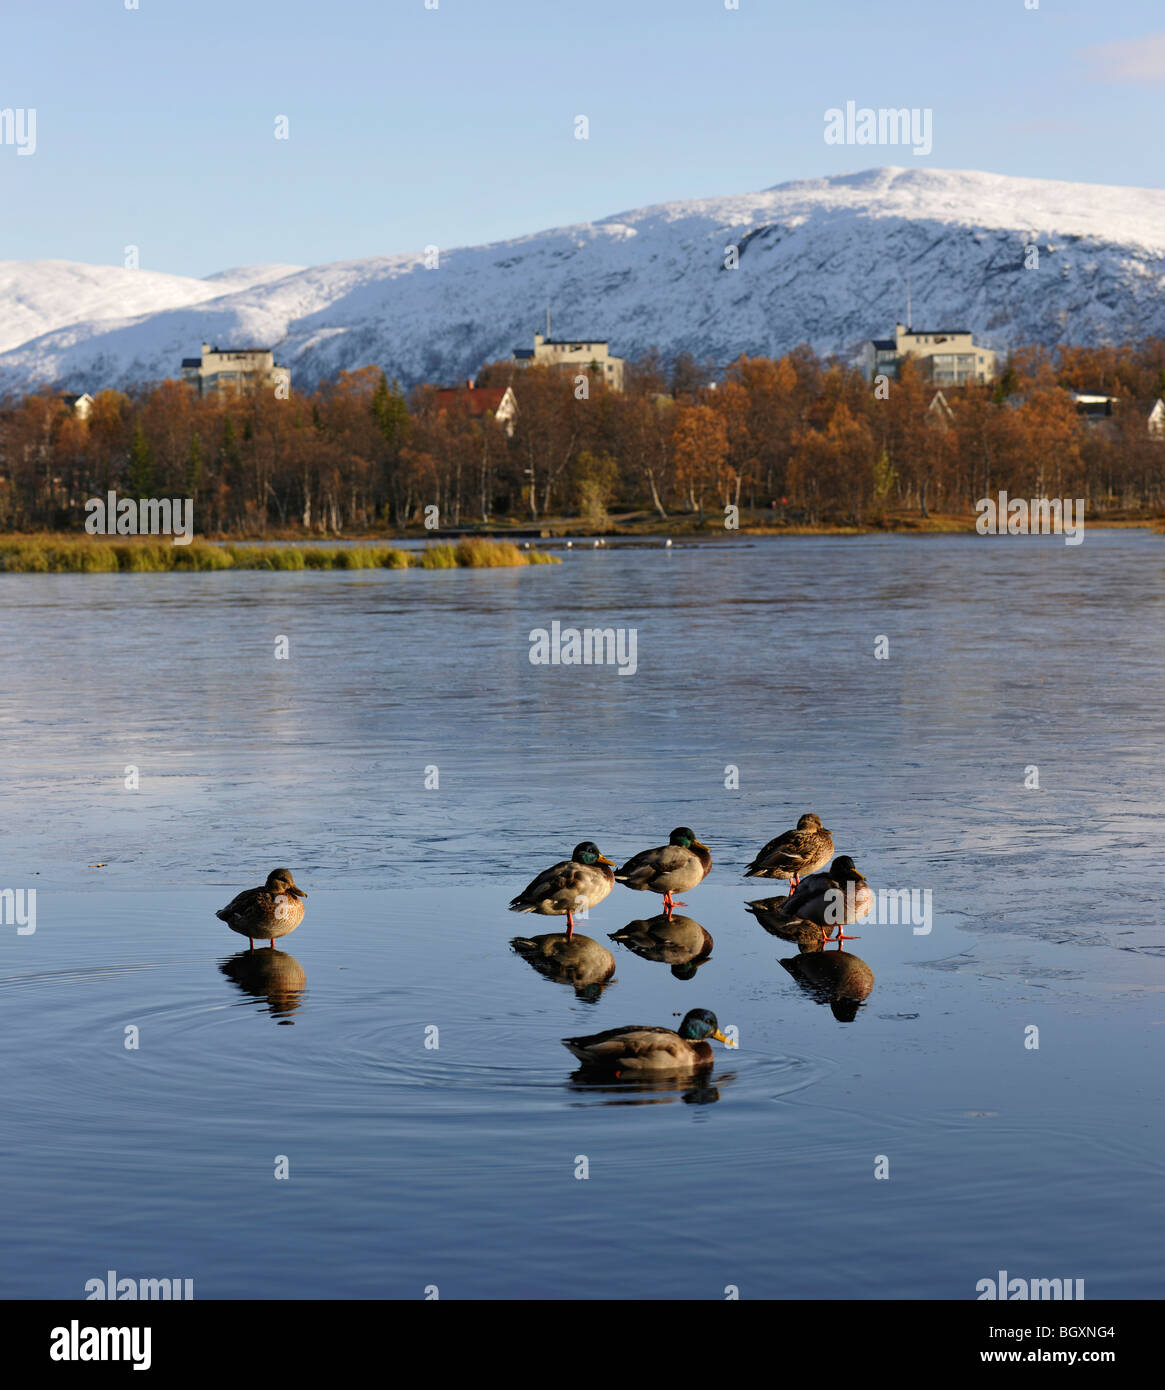 Le anatre bastarde su una sottile superficie di ghiaccio su un lago. Riflessioni, immagini speculari, degli uccelli. Tromso, Norvegia settentrionale Foto Stock